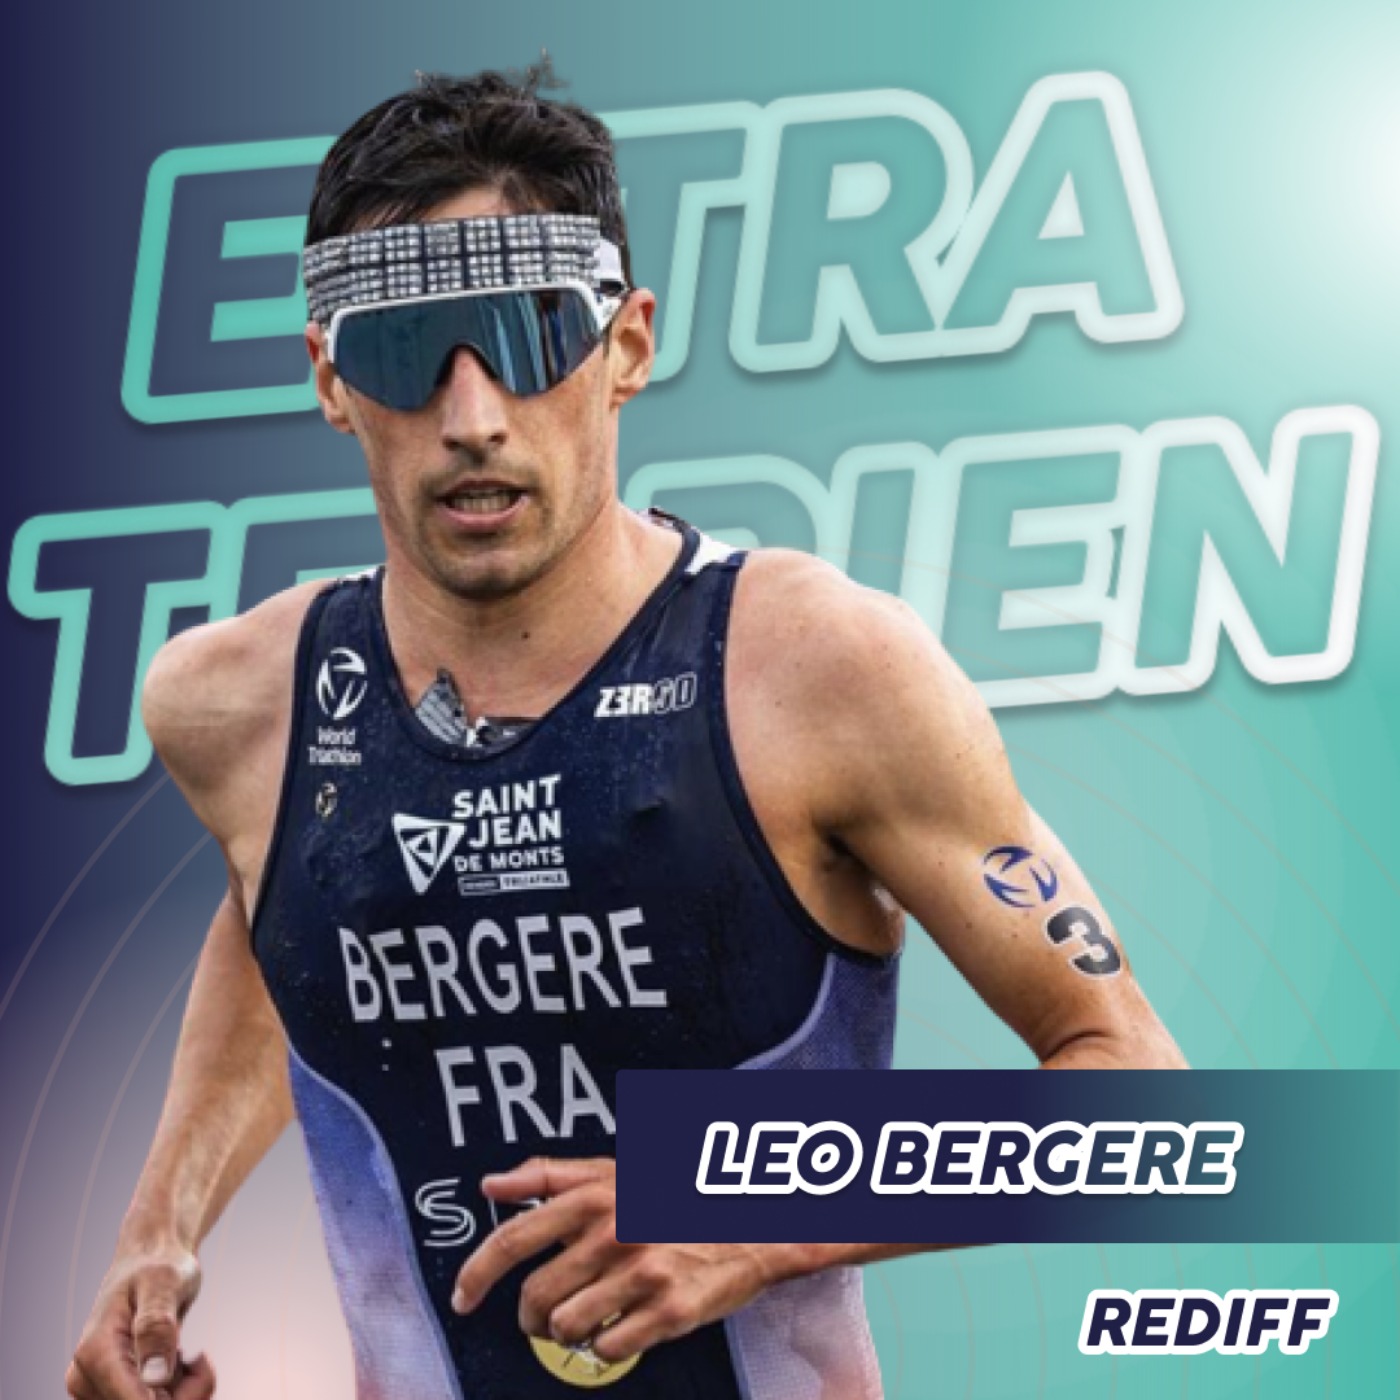 Léo Bergère - Champion du monde de triathlon 2022 (rediff)